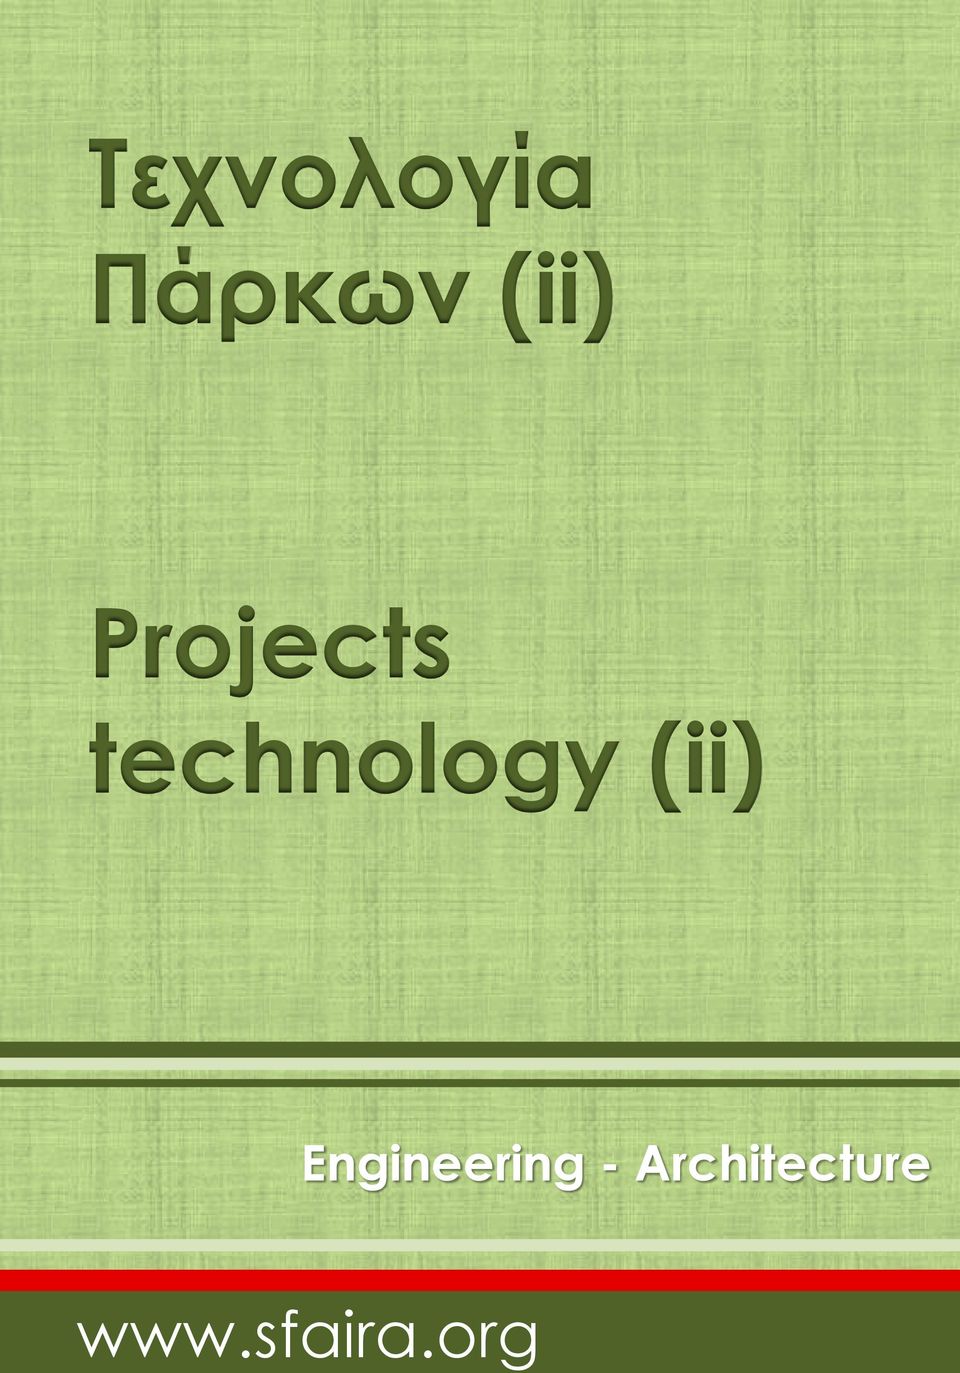 technology (ii)